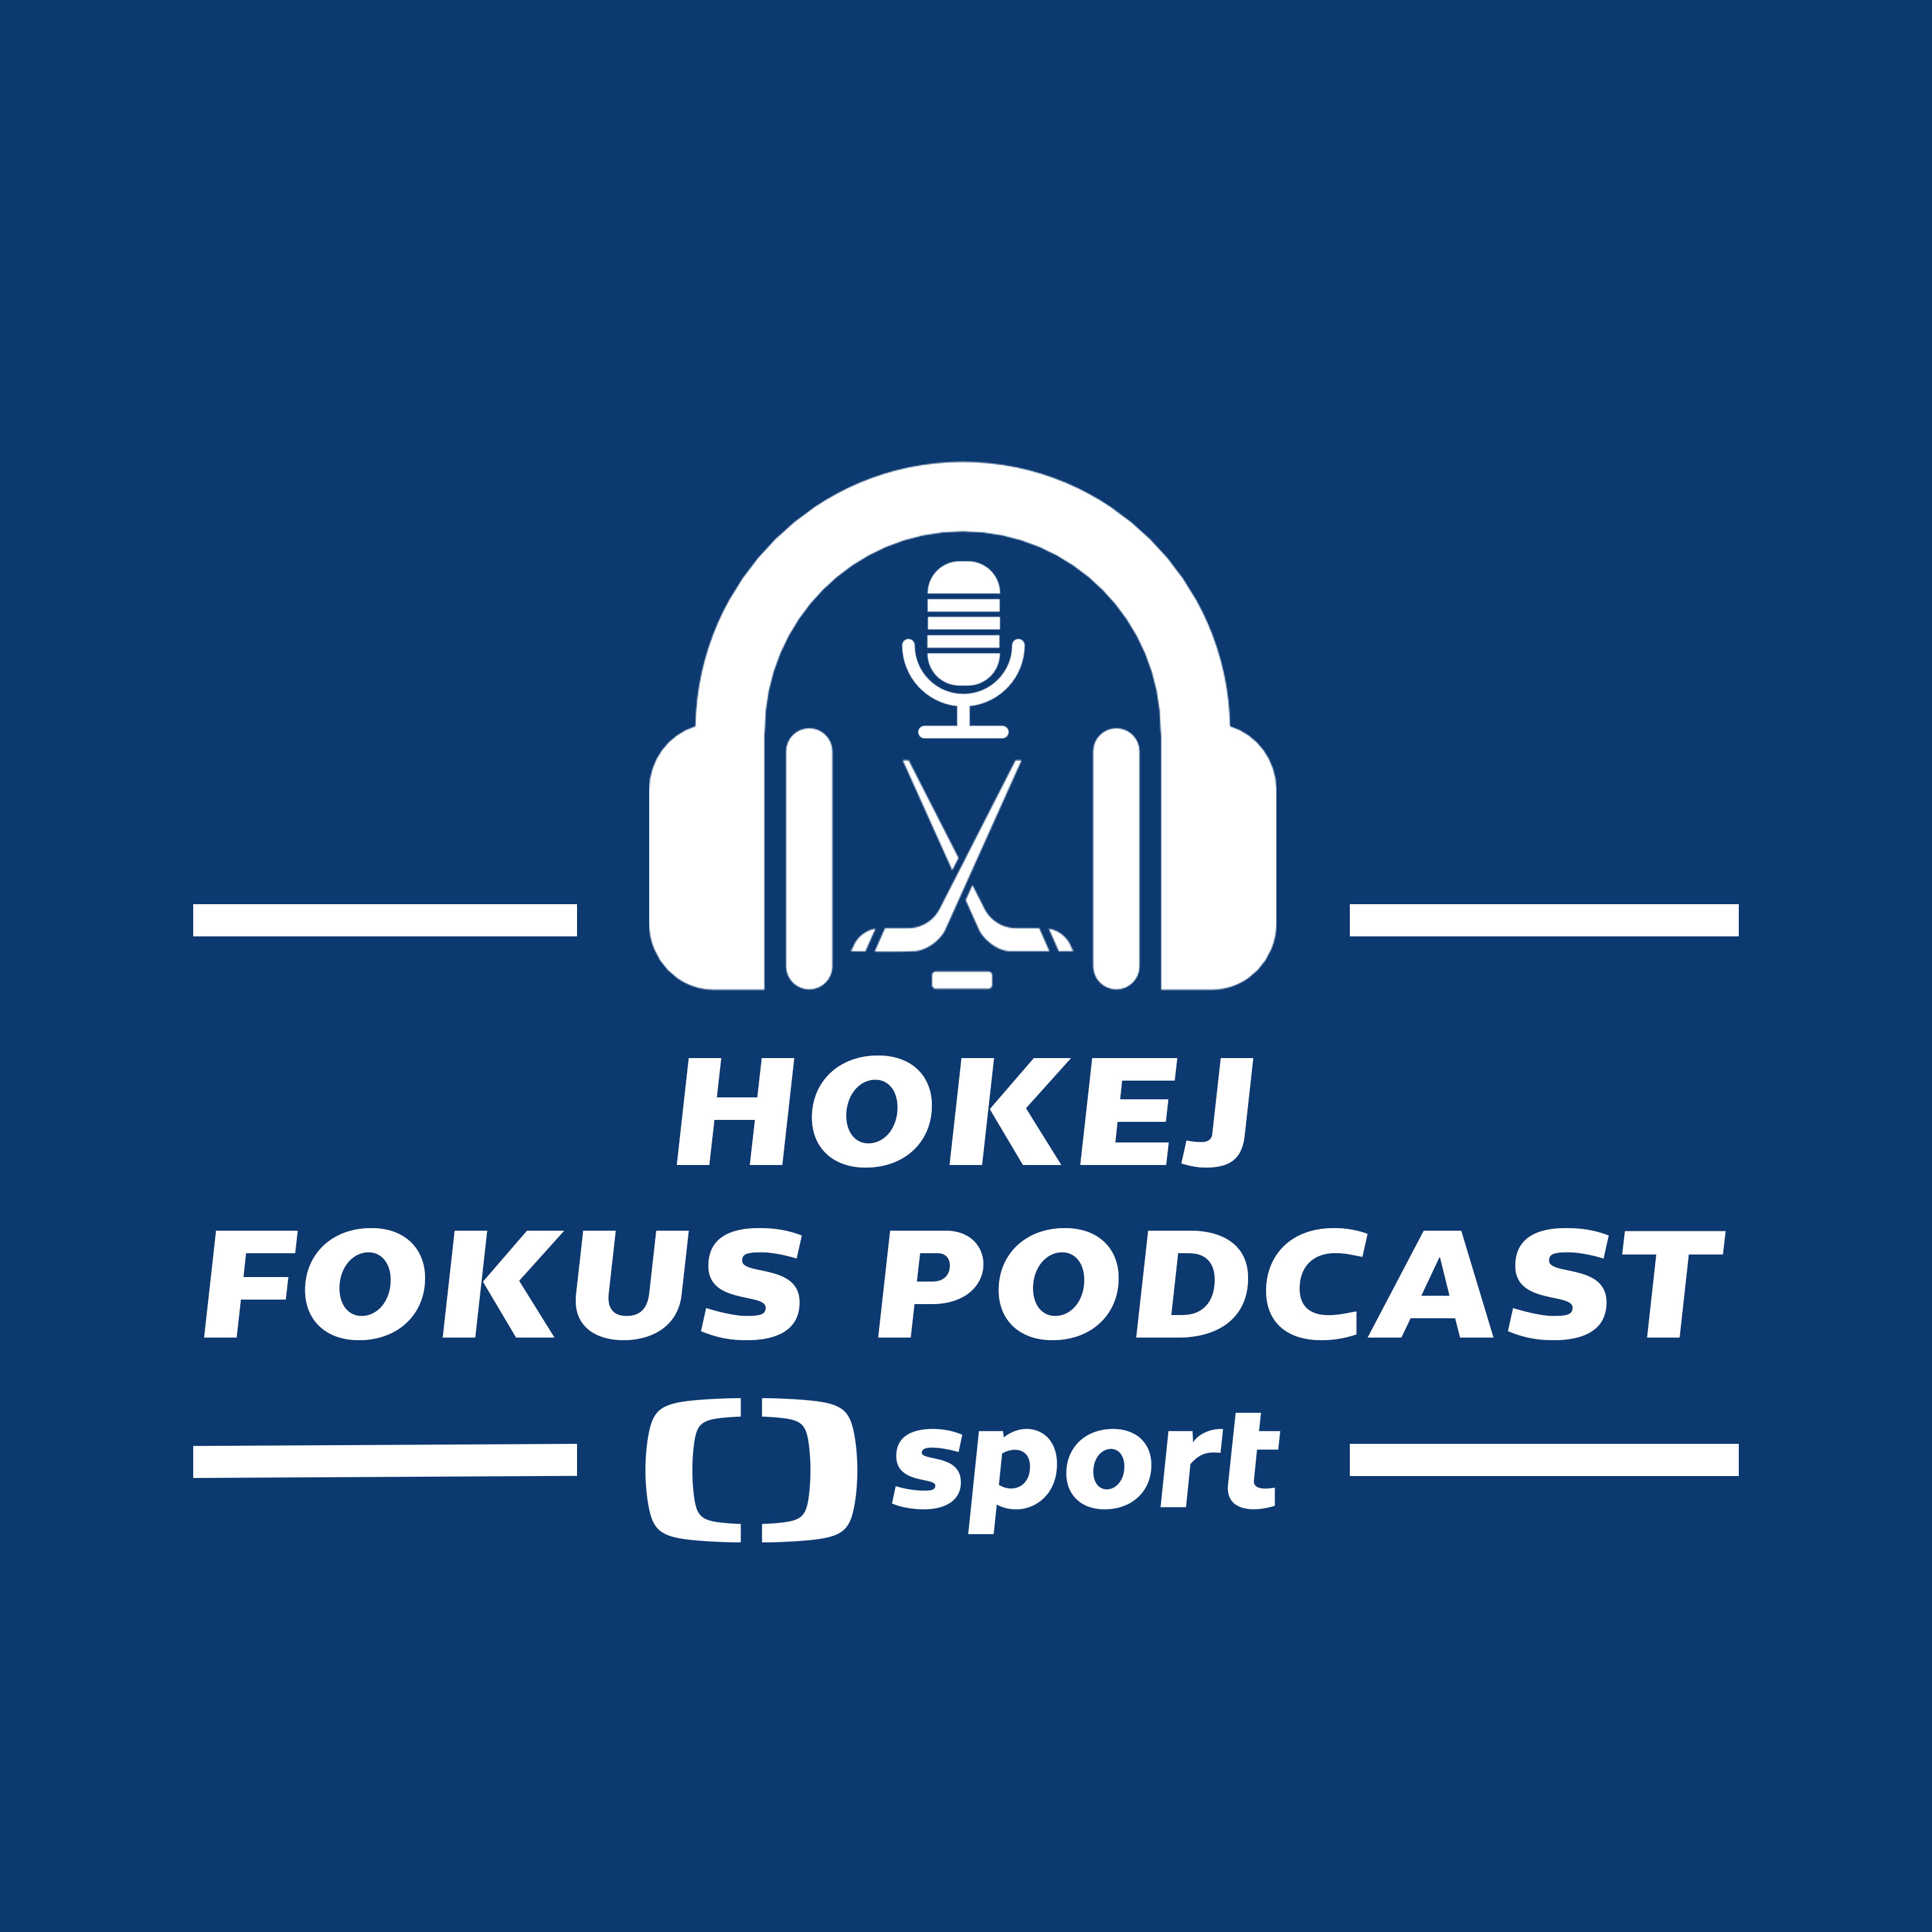 Hokej fokus podcast: Predikce sérií 1. kola play-off NHL a hlavní příběhy, které sledovat